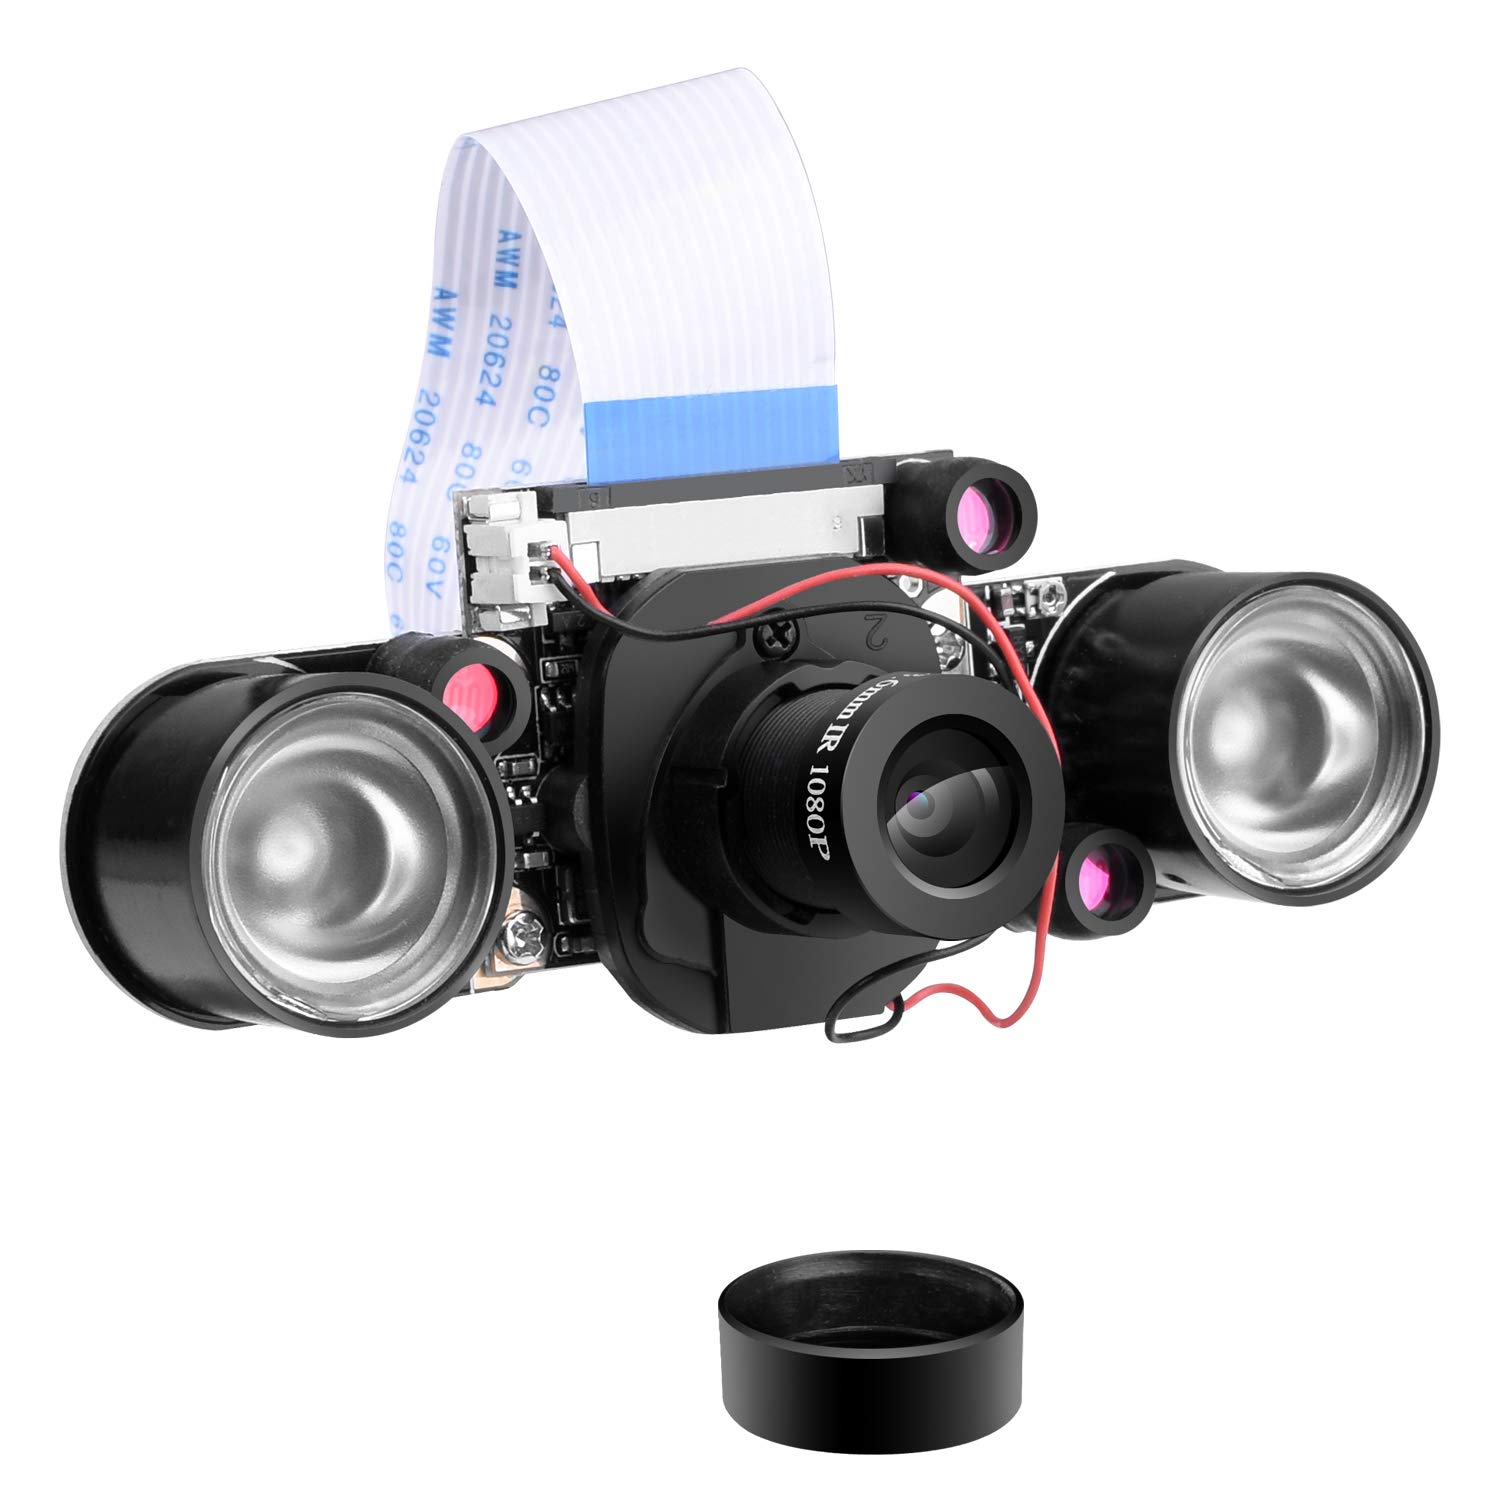 Longruner Camera Module for Ras